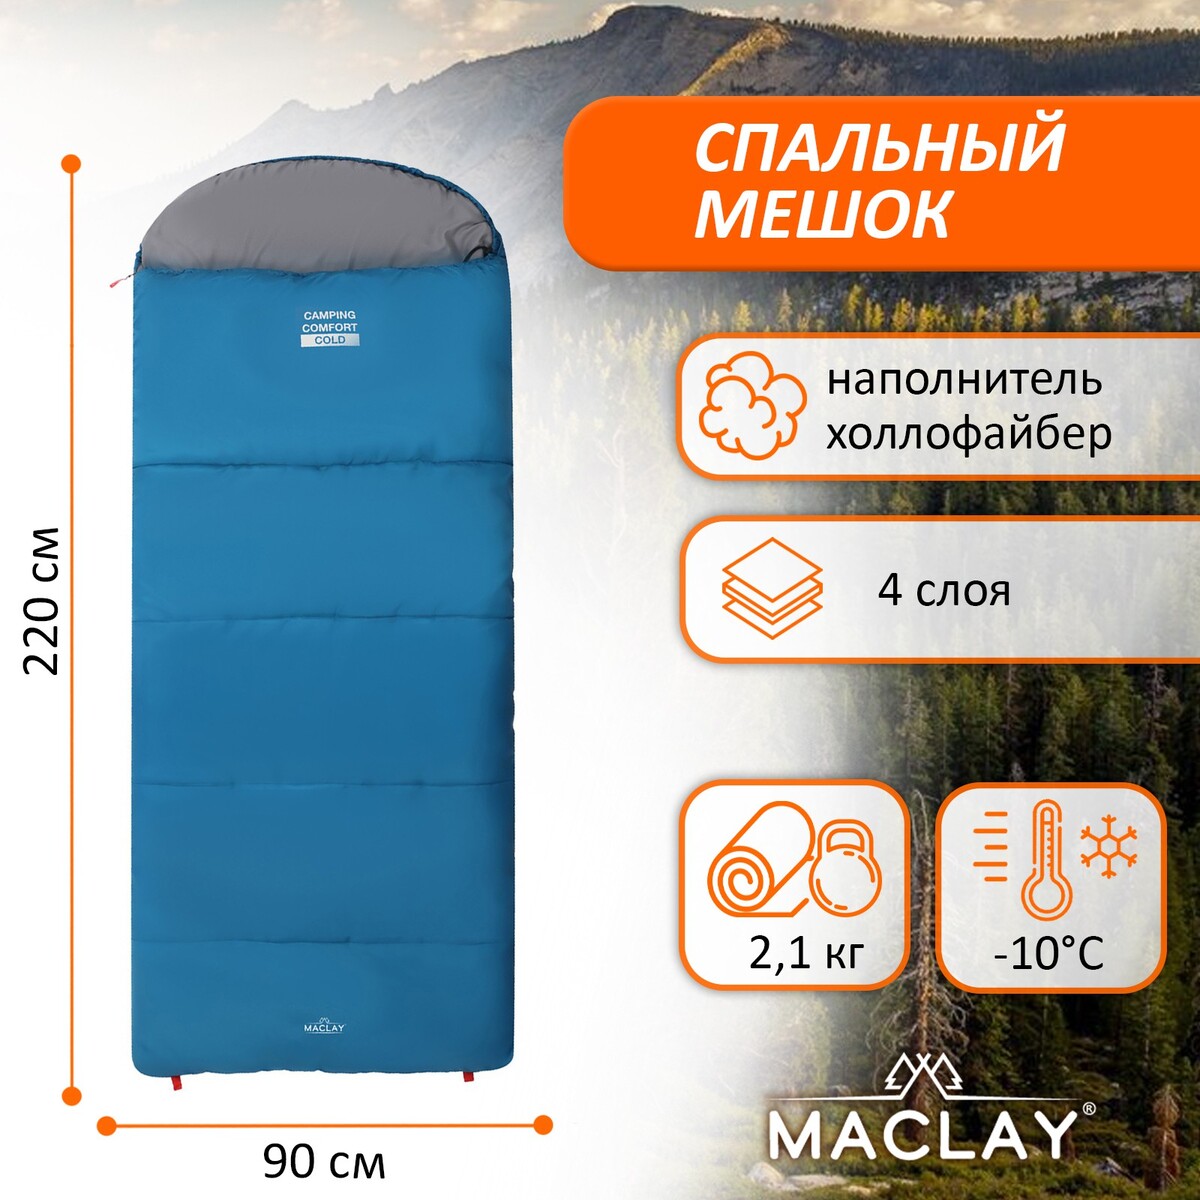 Спальный мешок maclay camping comfort cold, 4-слойный, правый, 220х90 см, -10/+5°с cold welcome